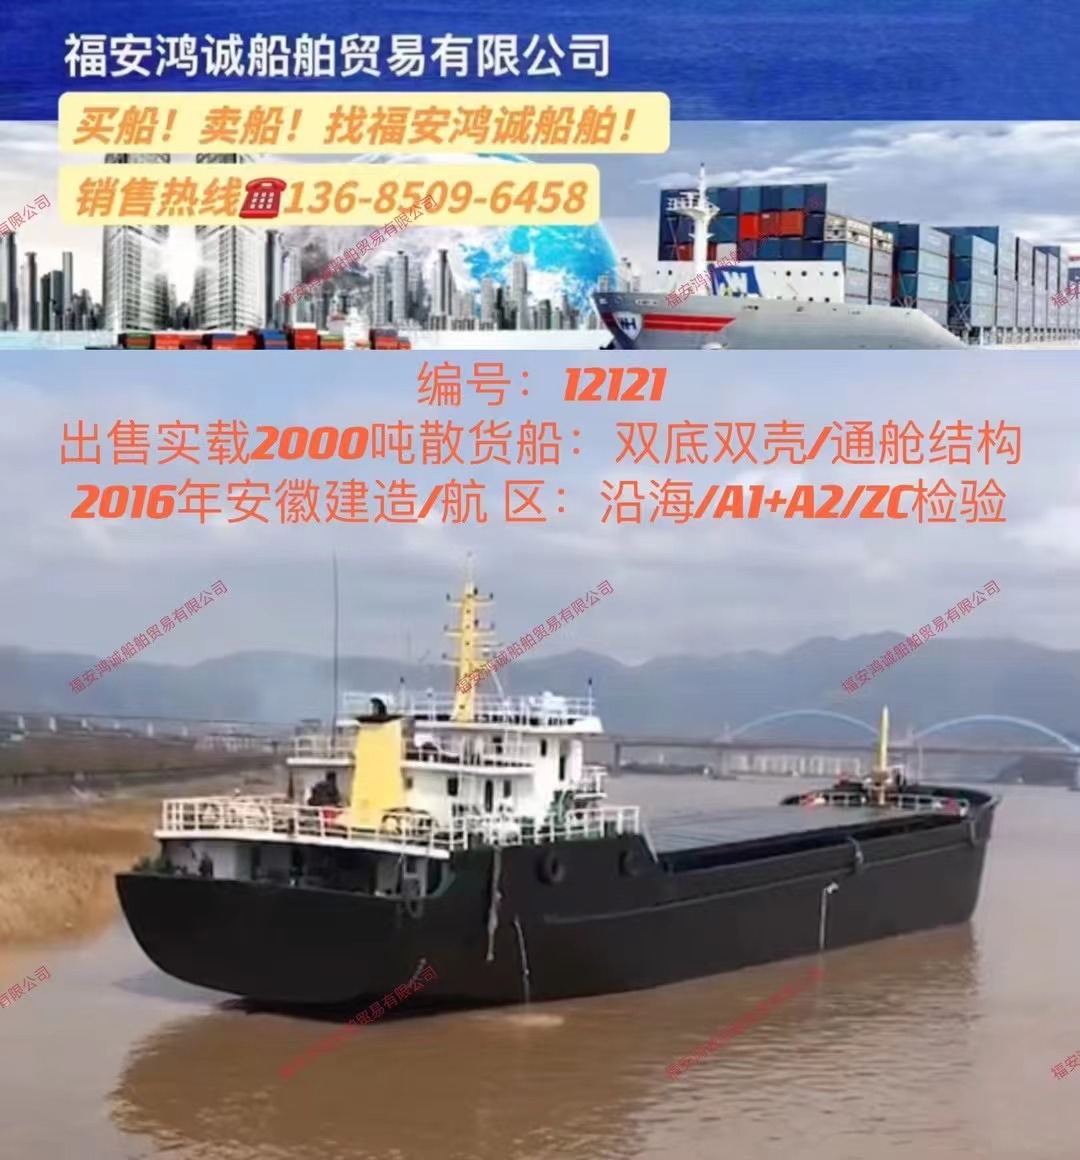 出售实载2000吨散货船： 双底双壳/通舱结构/ 2016年安徽建造/